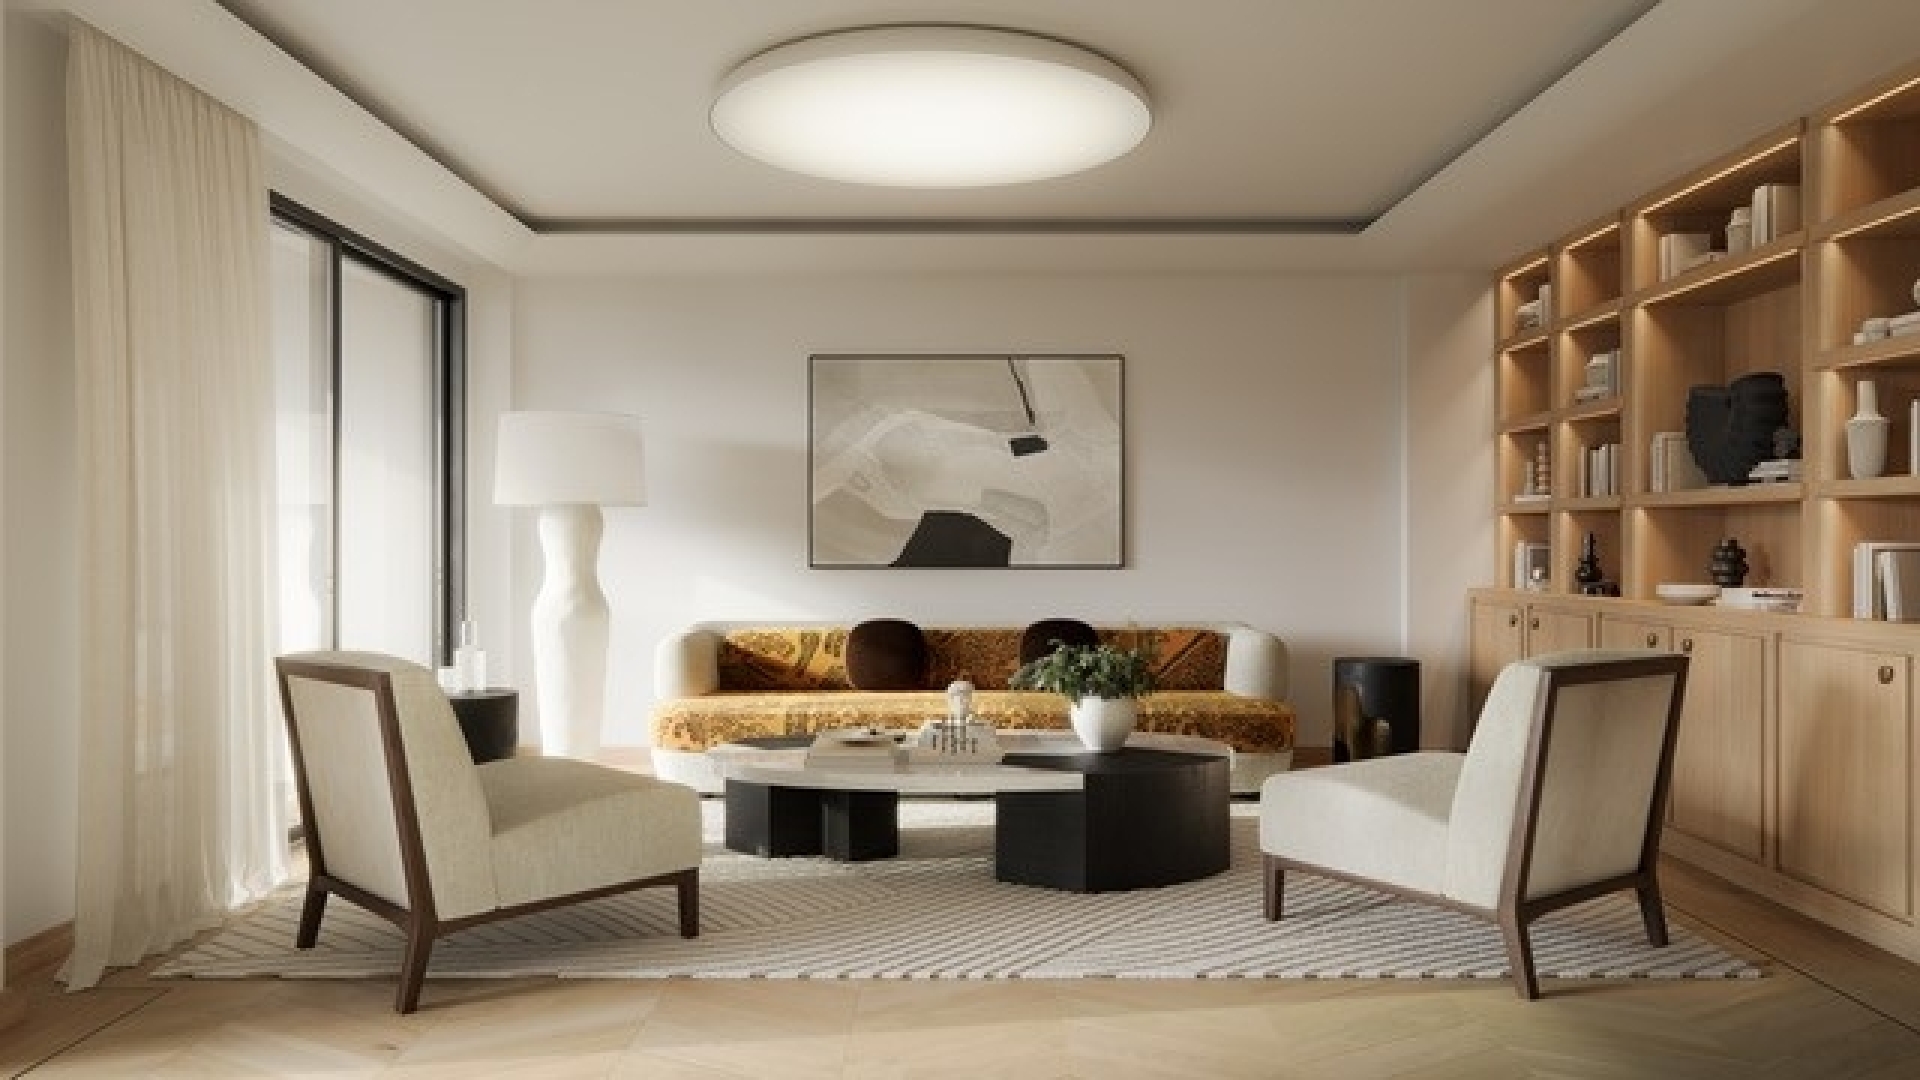 Dotta Appartement de 6+ pieces a vendre - CARAVELLES - Port - Monaco - imgimage4